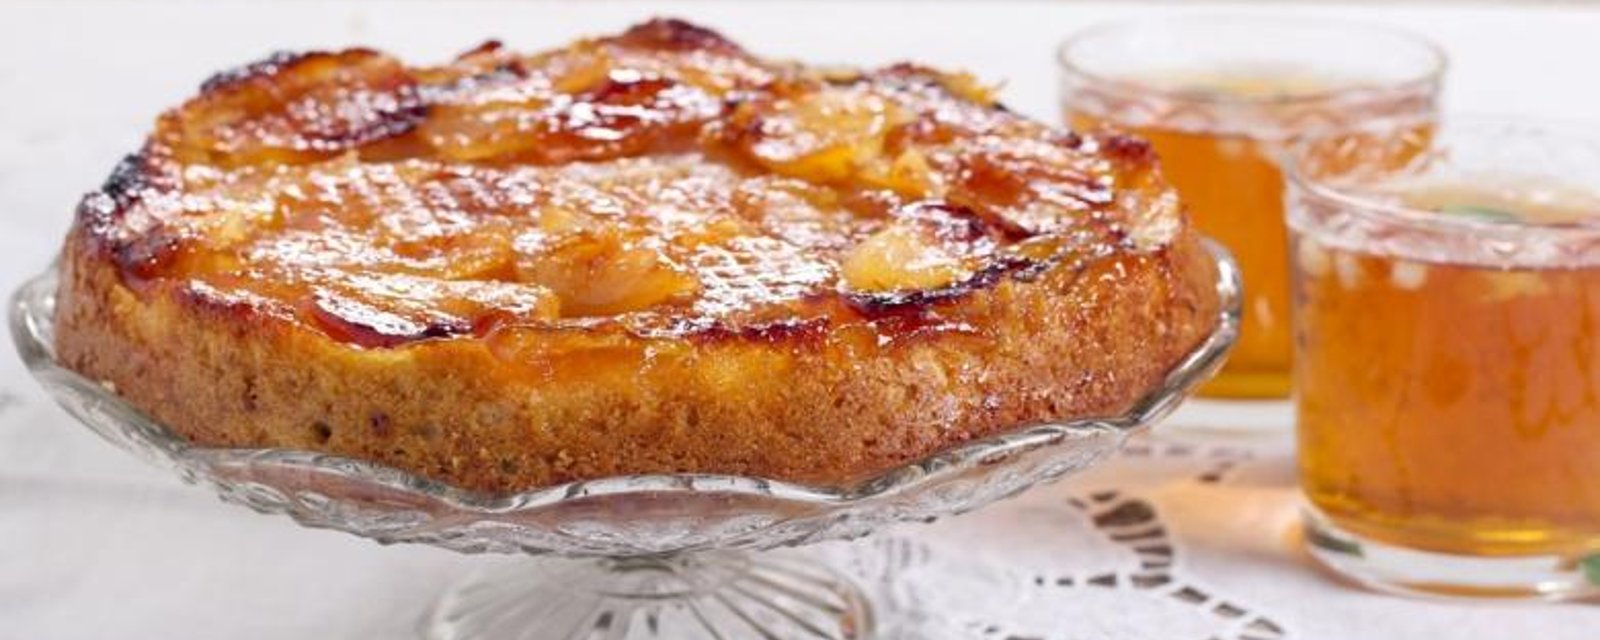 Renversez-le pour épater vos amis! Une façon facile de cuisiner le gâteau renversé aux pommes!